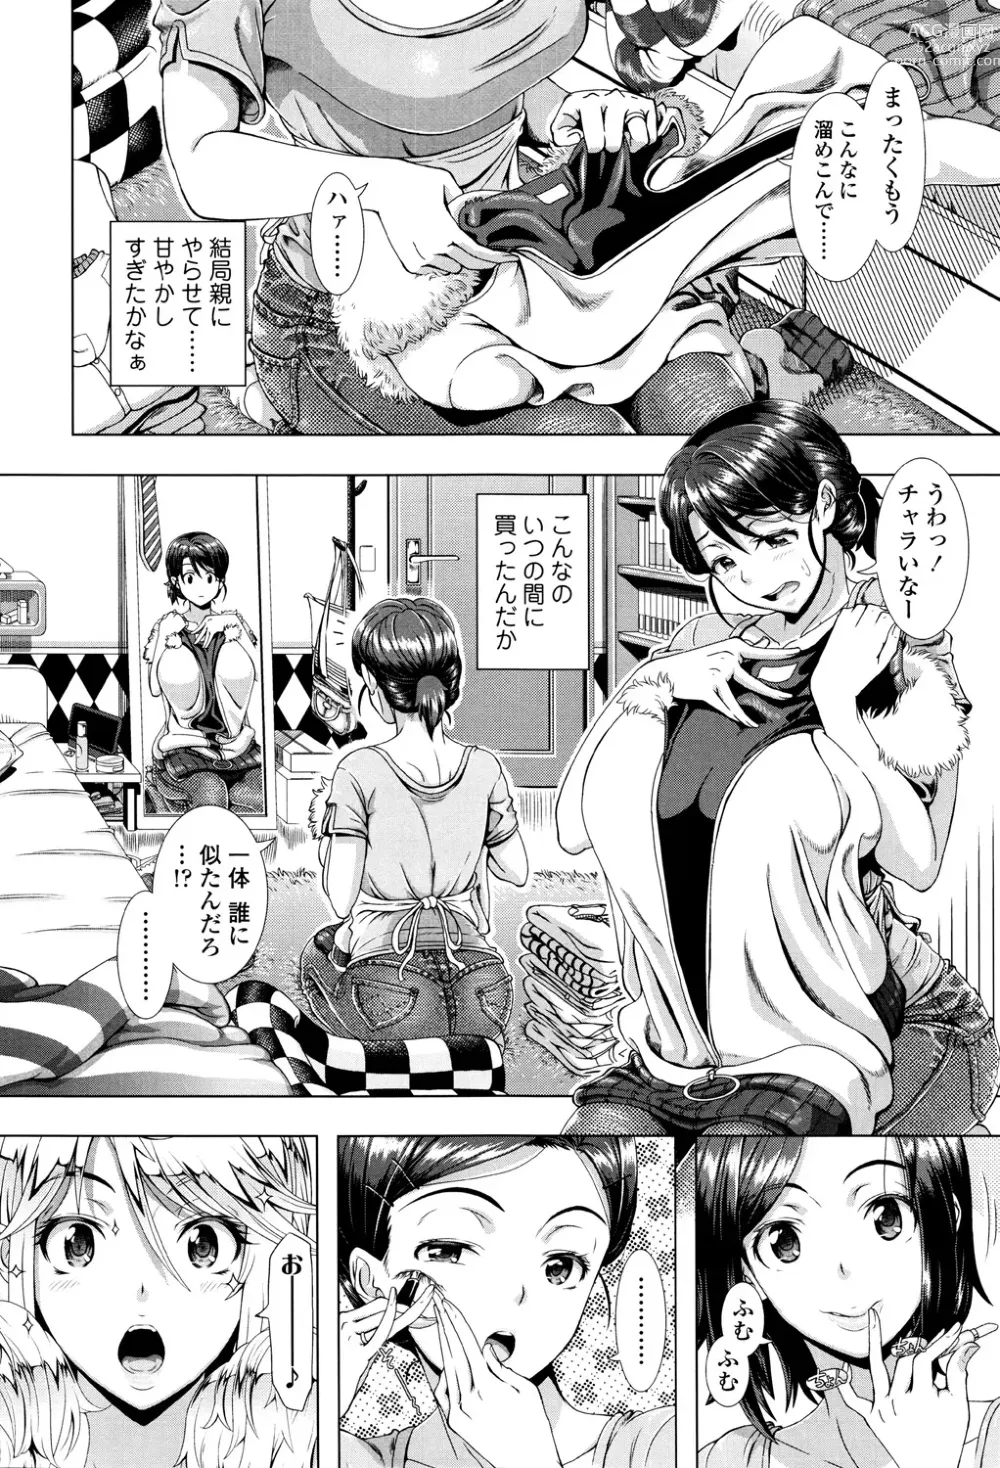 Page 4 of manga Hitozuma Life - Married Woman Life